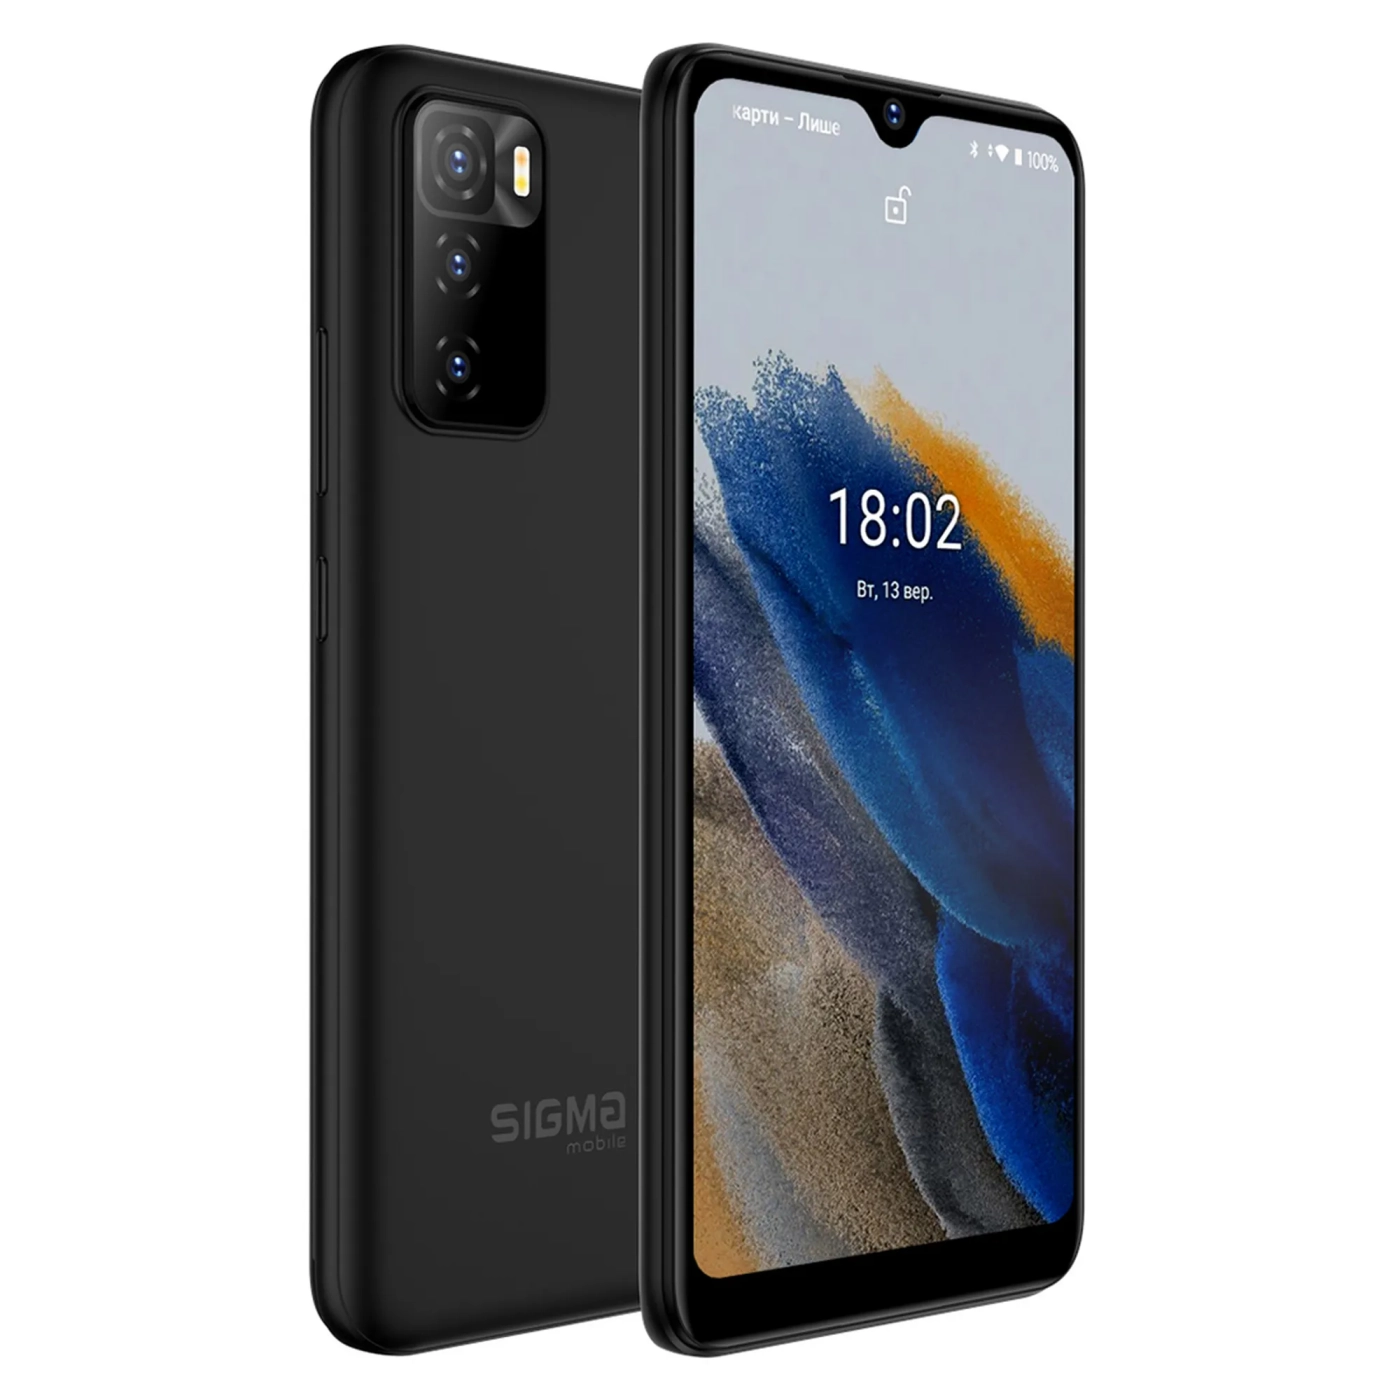 Купить Смартфон Sigma X-style S5502 2/16GB Black (4827798524213) - фото 1